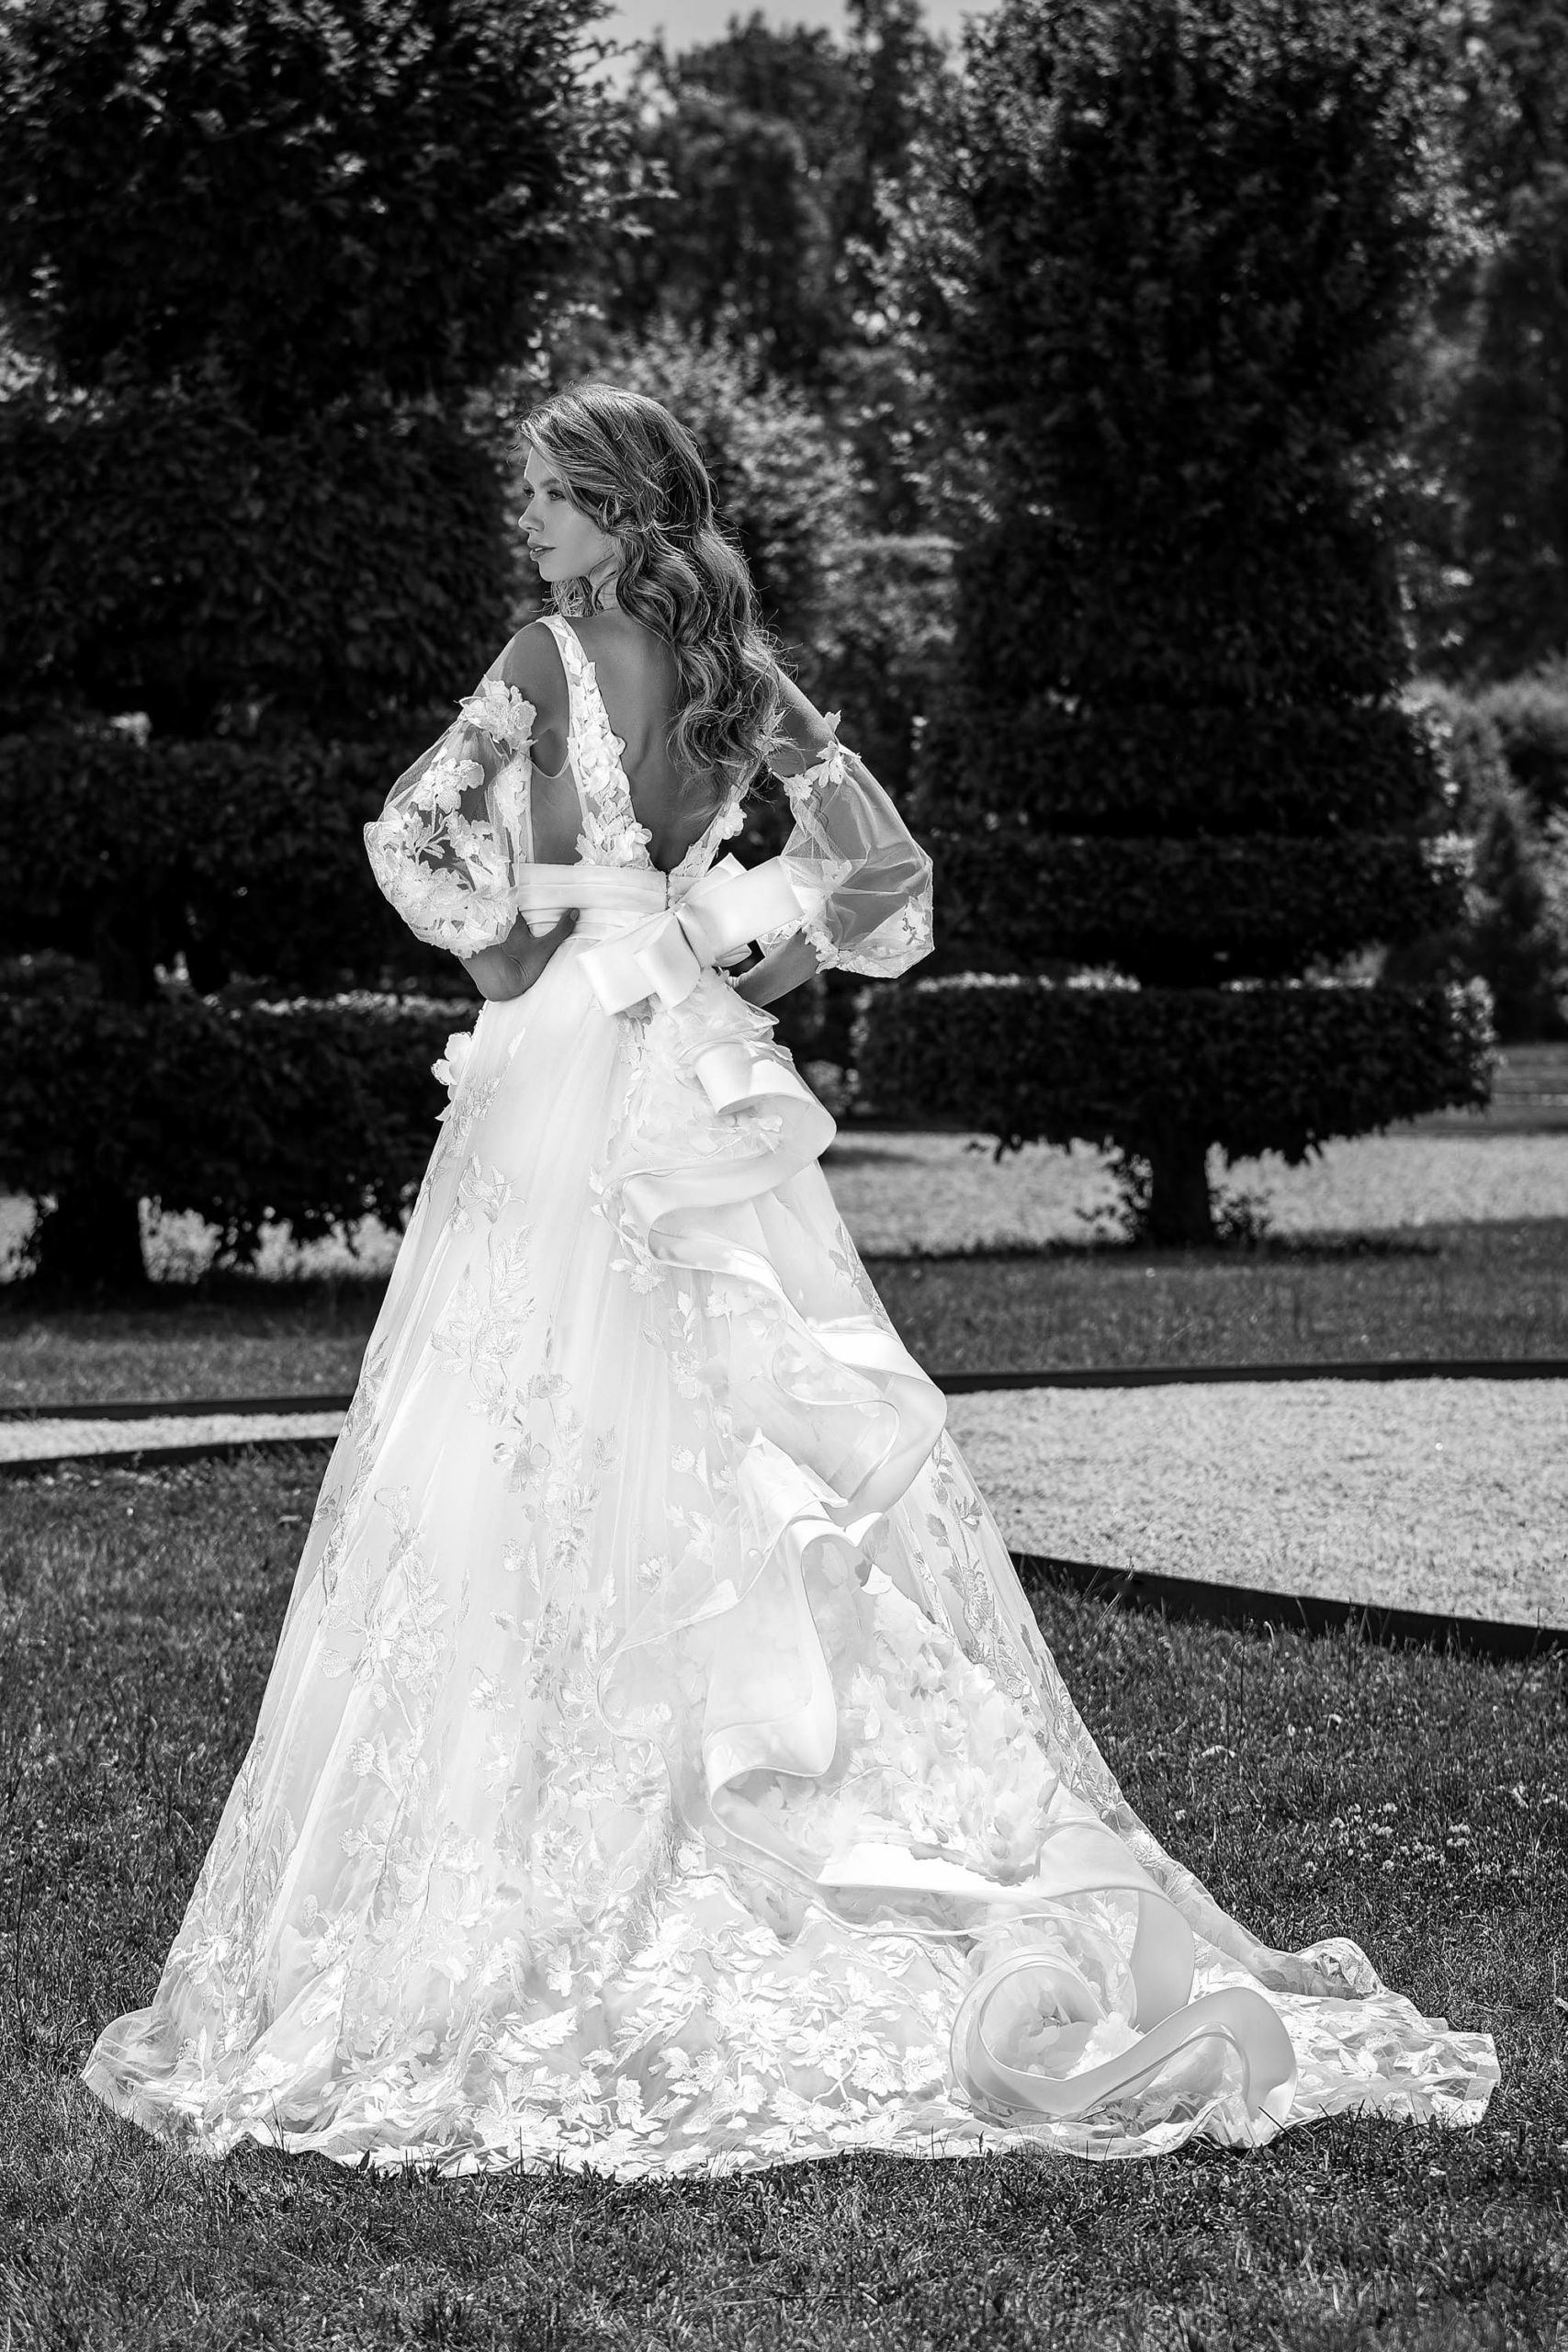 Abiti da Sposa Ostra Vetere: Scopri lo Stile Vogue con l'Alta Moda Sposa -  L'Arte del Made in Italy per un Look Nuziale Indimenticabile - Per una Sposa Unica e Particolare! 